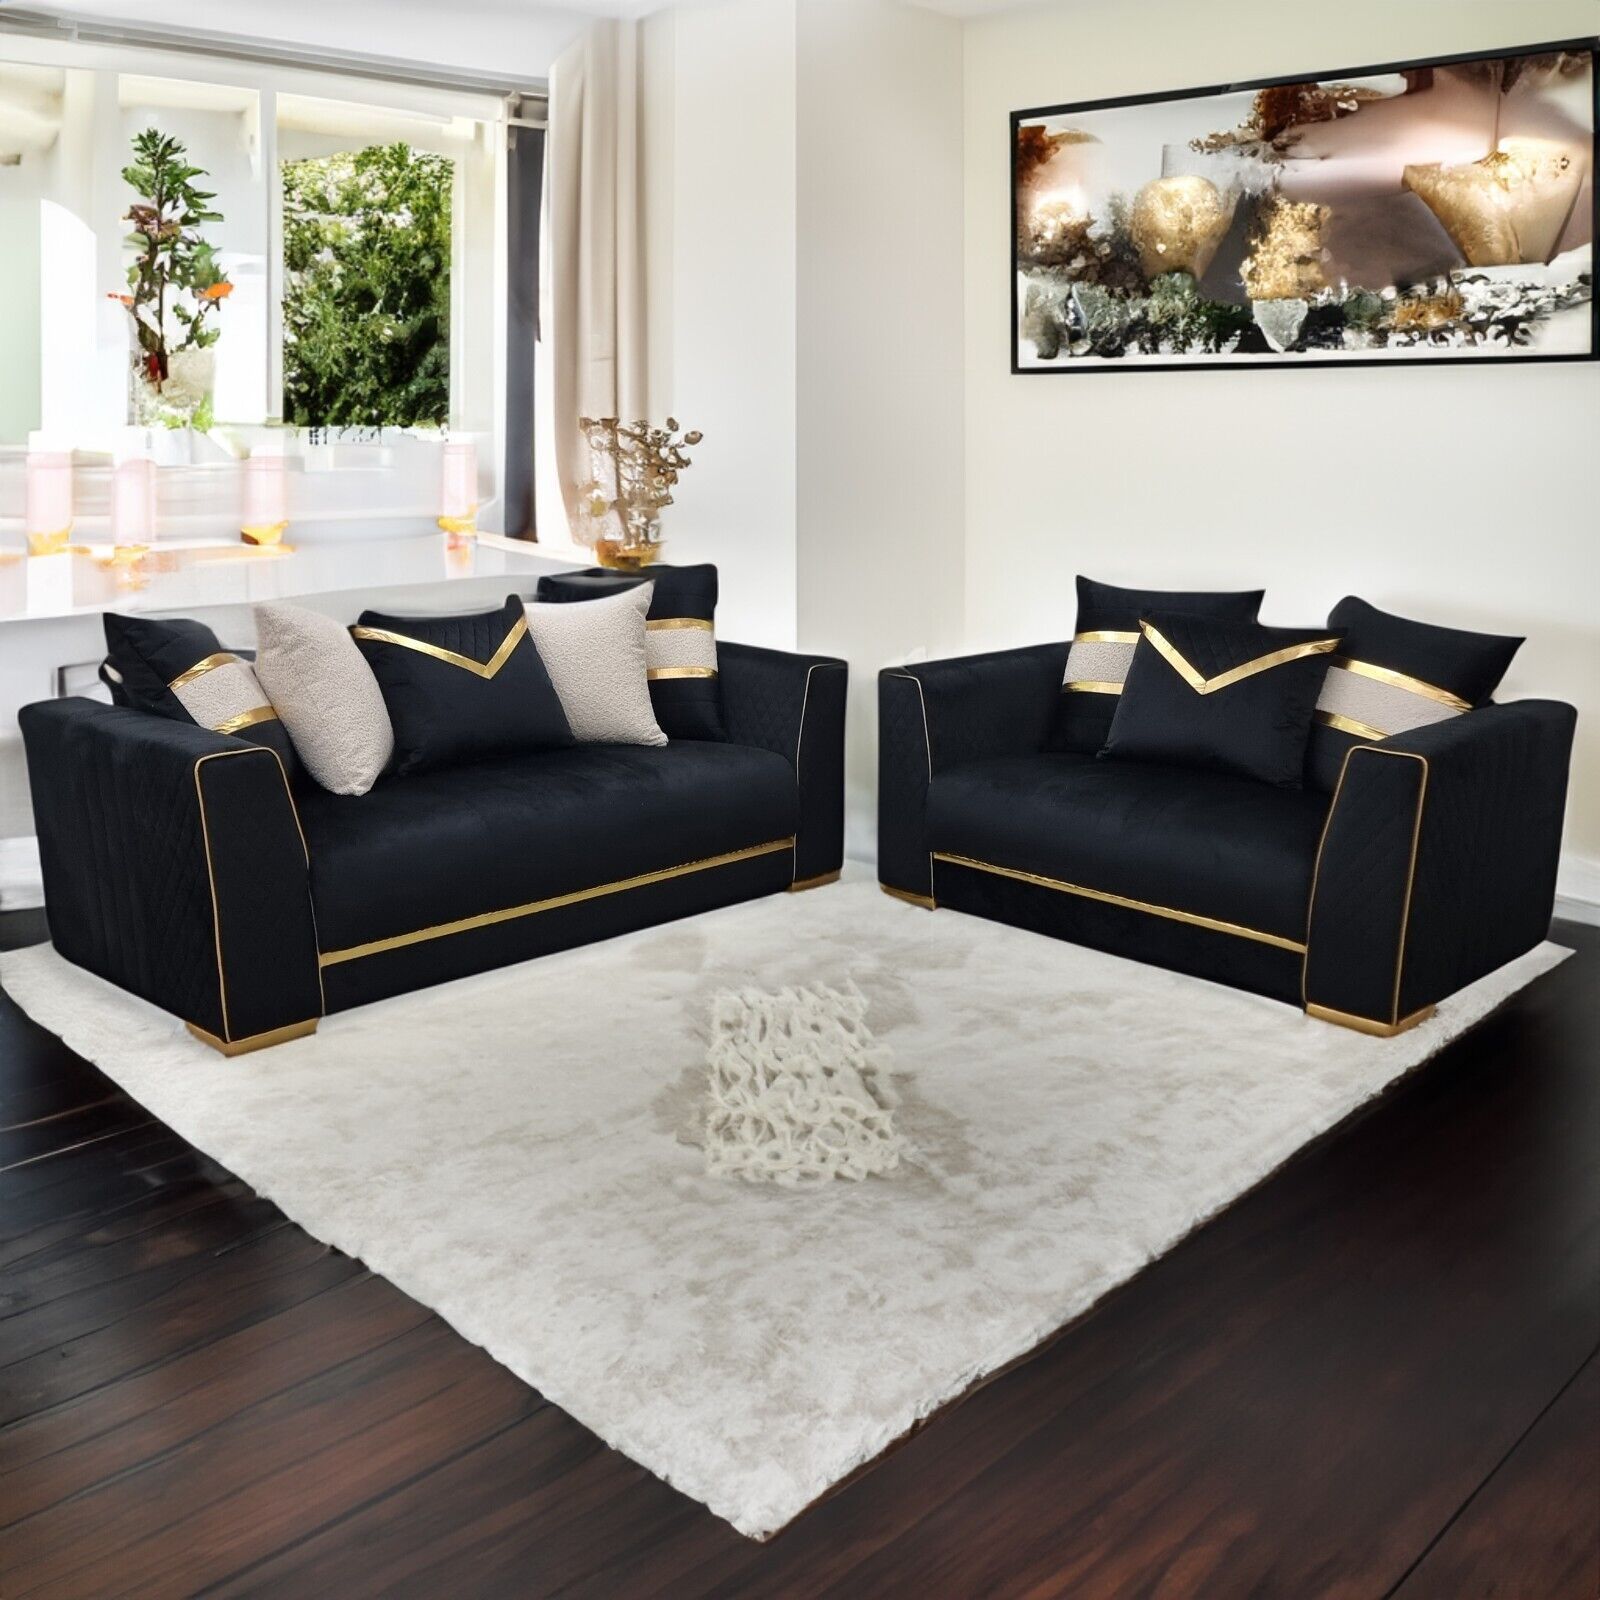 Furnituredw Empire 3 & 2 Seater Velvet Sofa Set Black & Gold For Living  Room | Ebay Within Sofas In Black (View 14 of 15)